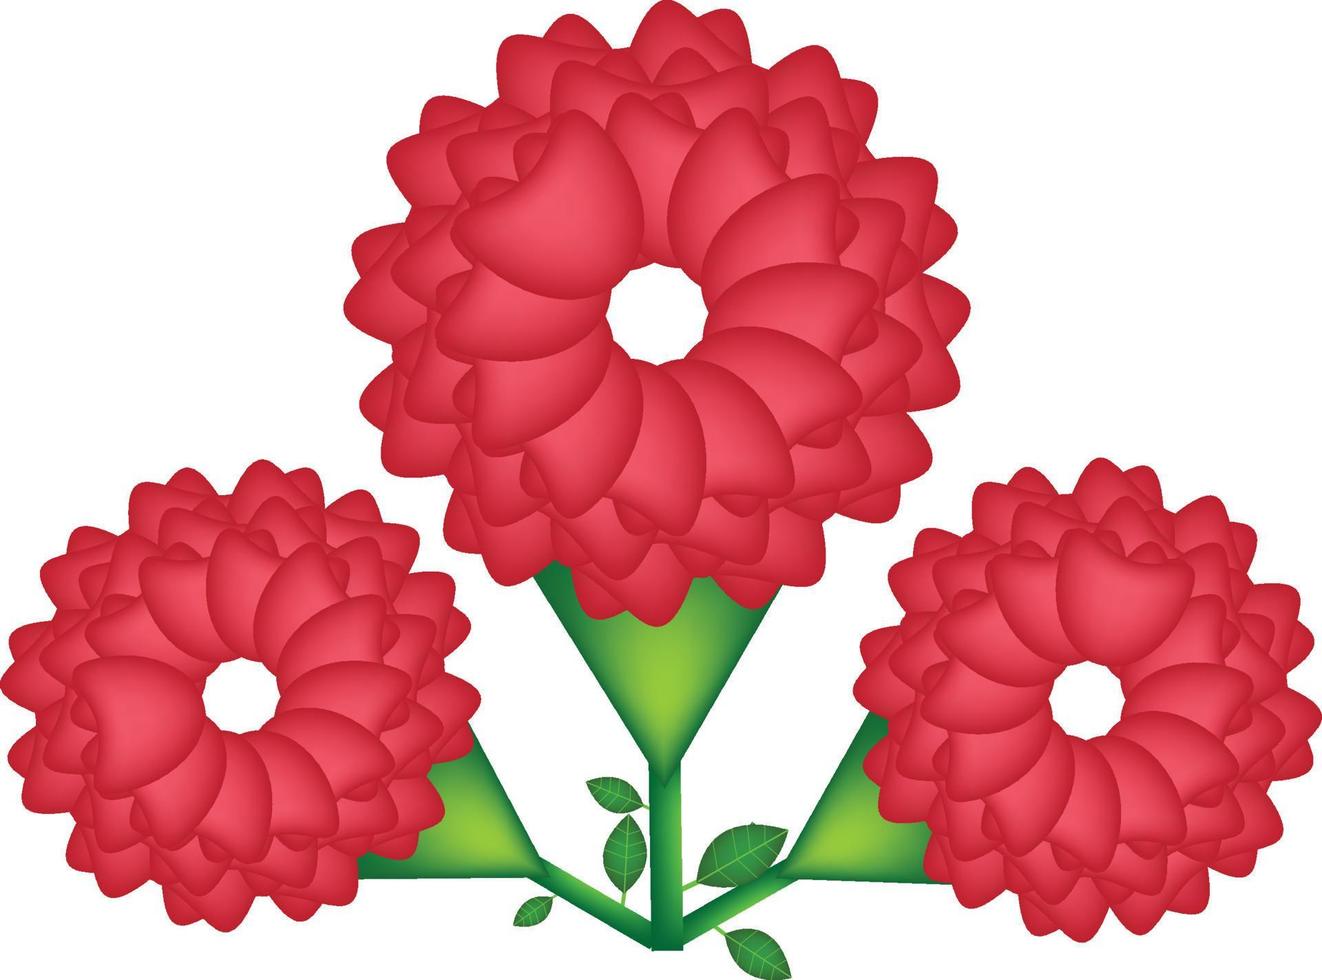 realistisch vrij rood bloem met groen blad vector sjabloon